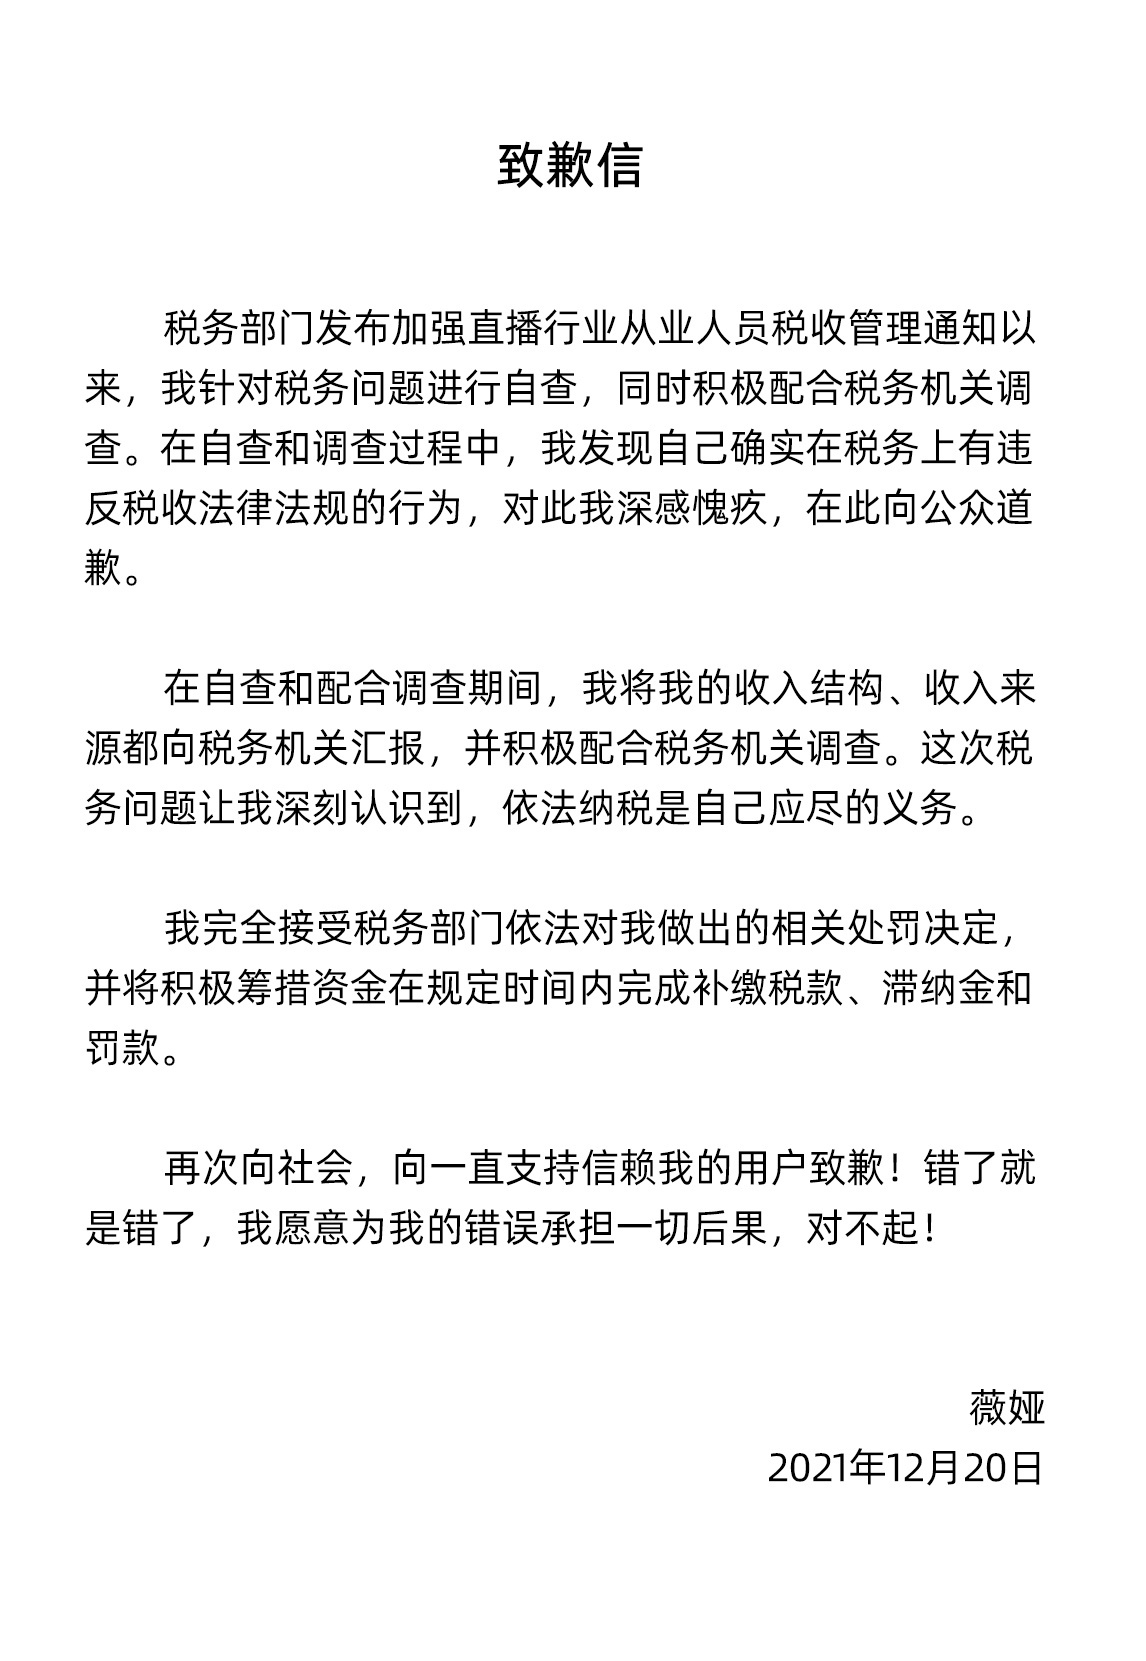 天游平台注册地址偷逃税被罚！薇娅微博发布致歉信